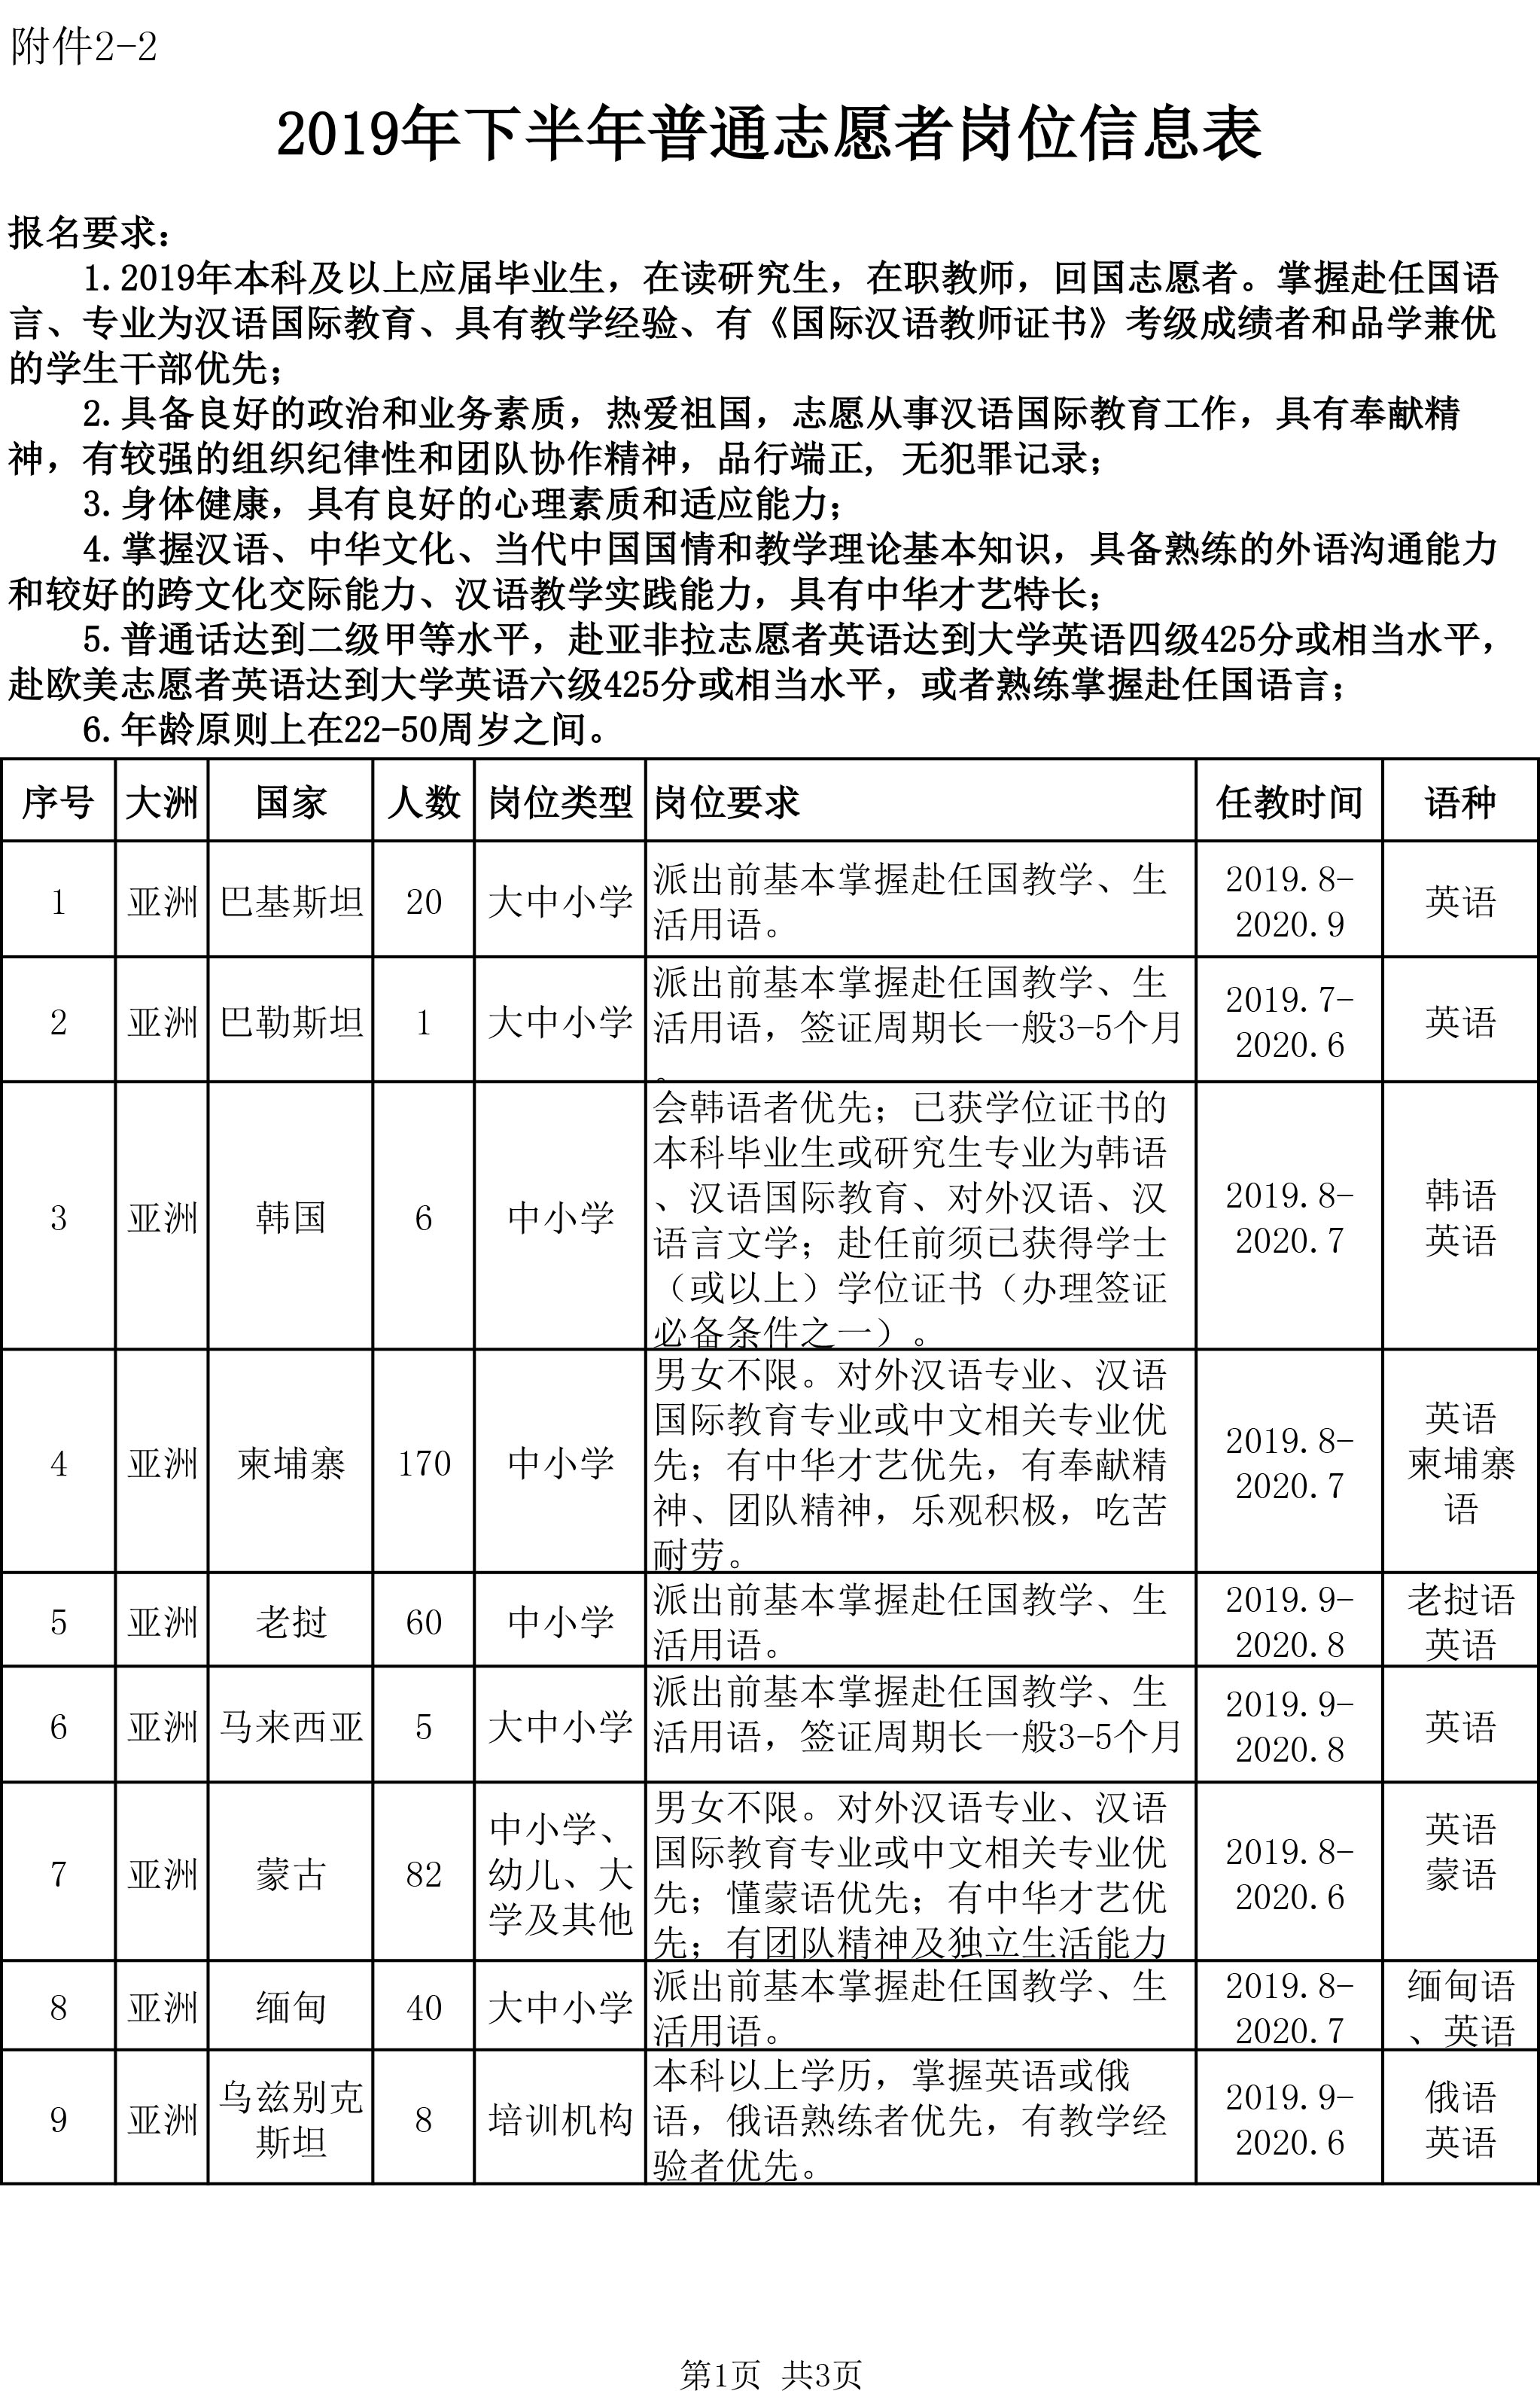 2019年下半年汉语教师志愿者岗位信息表 普通志愿者